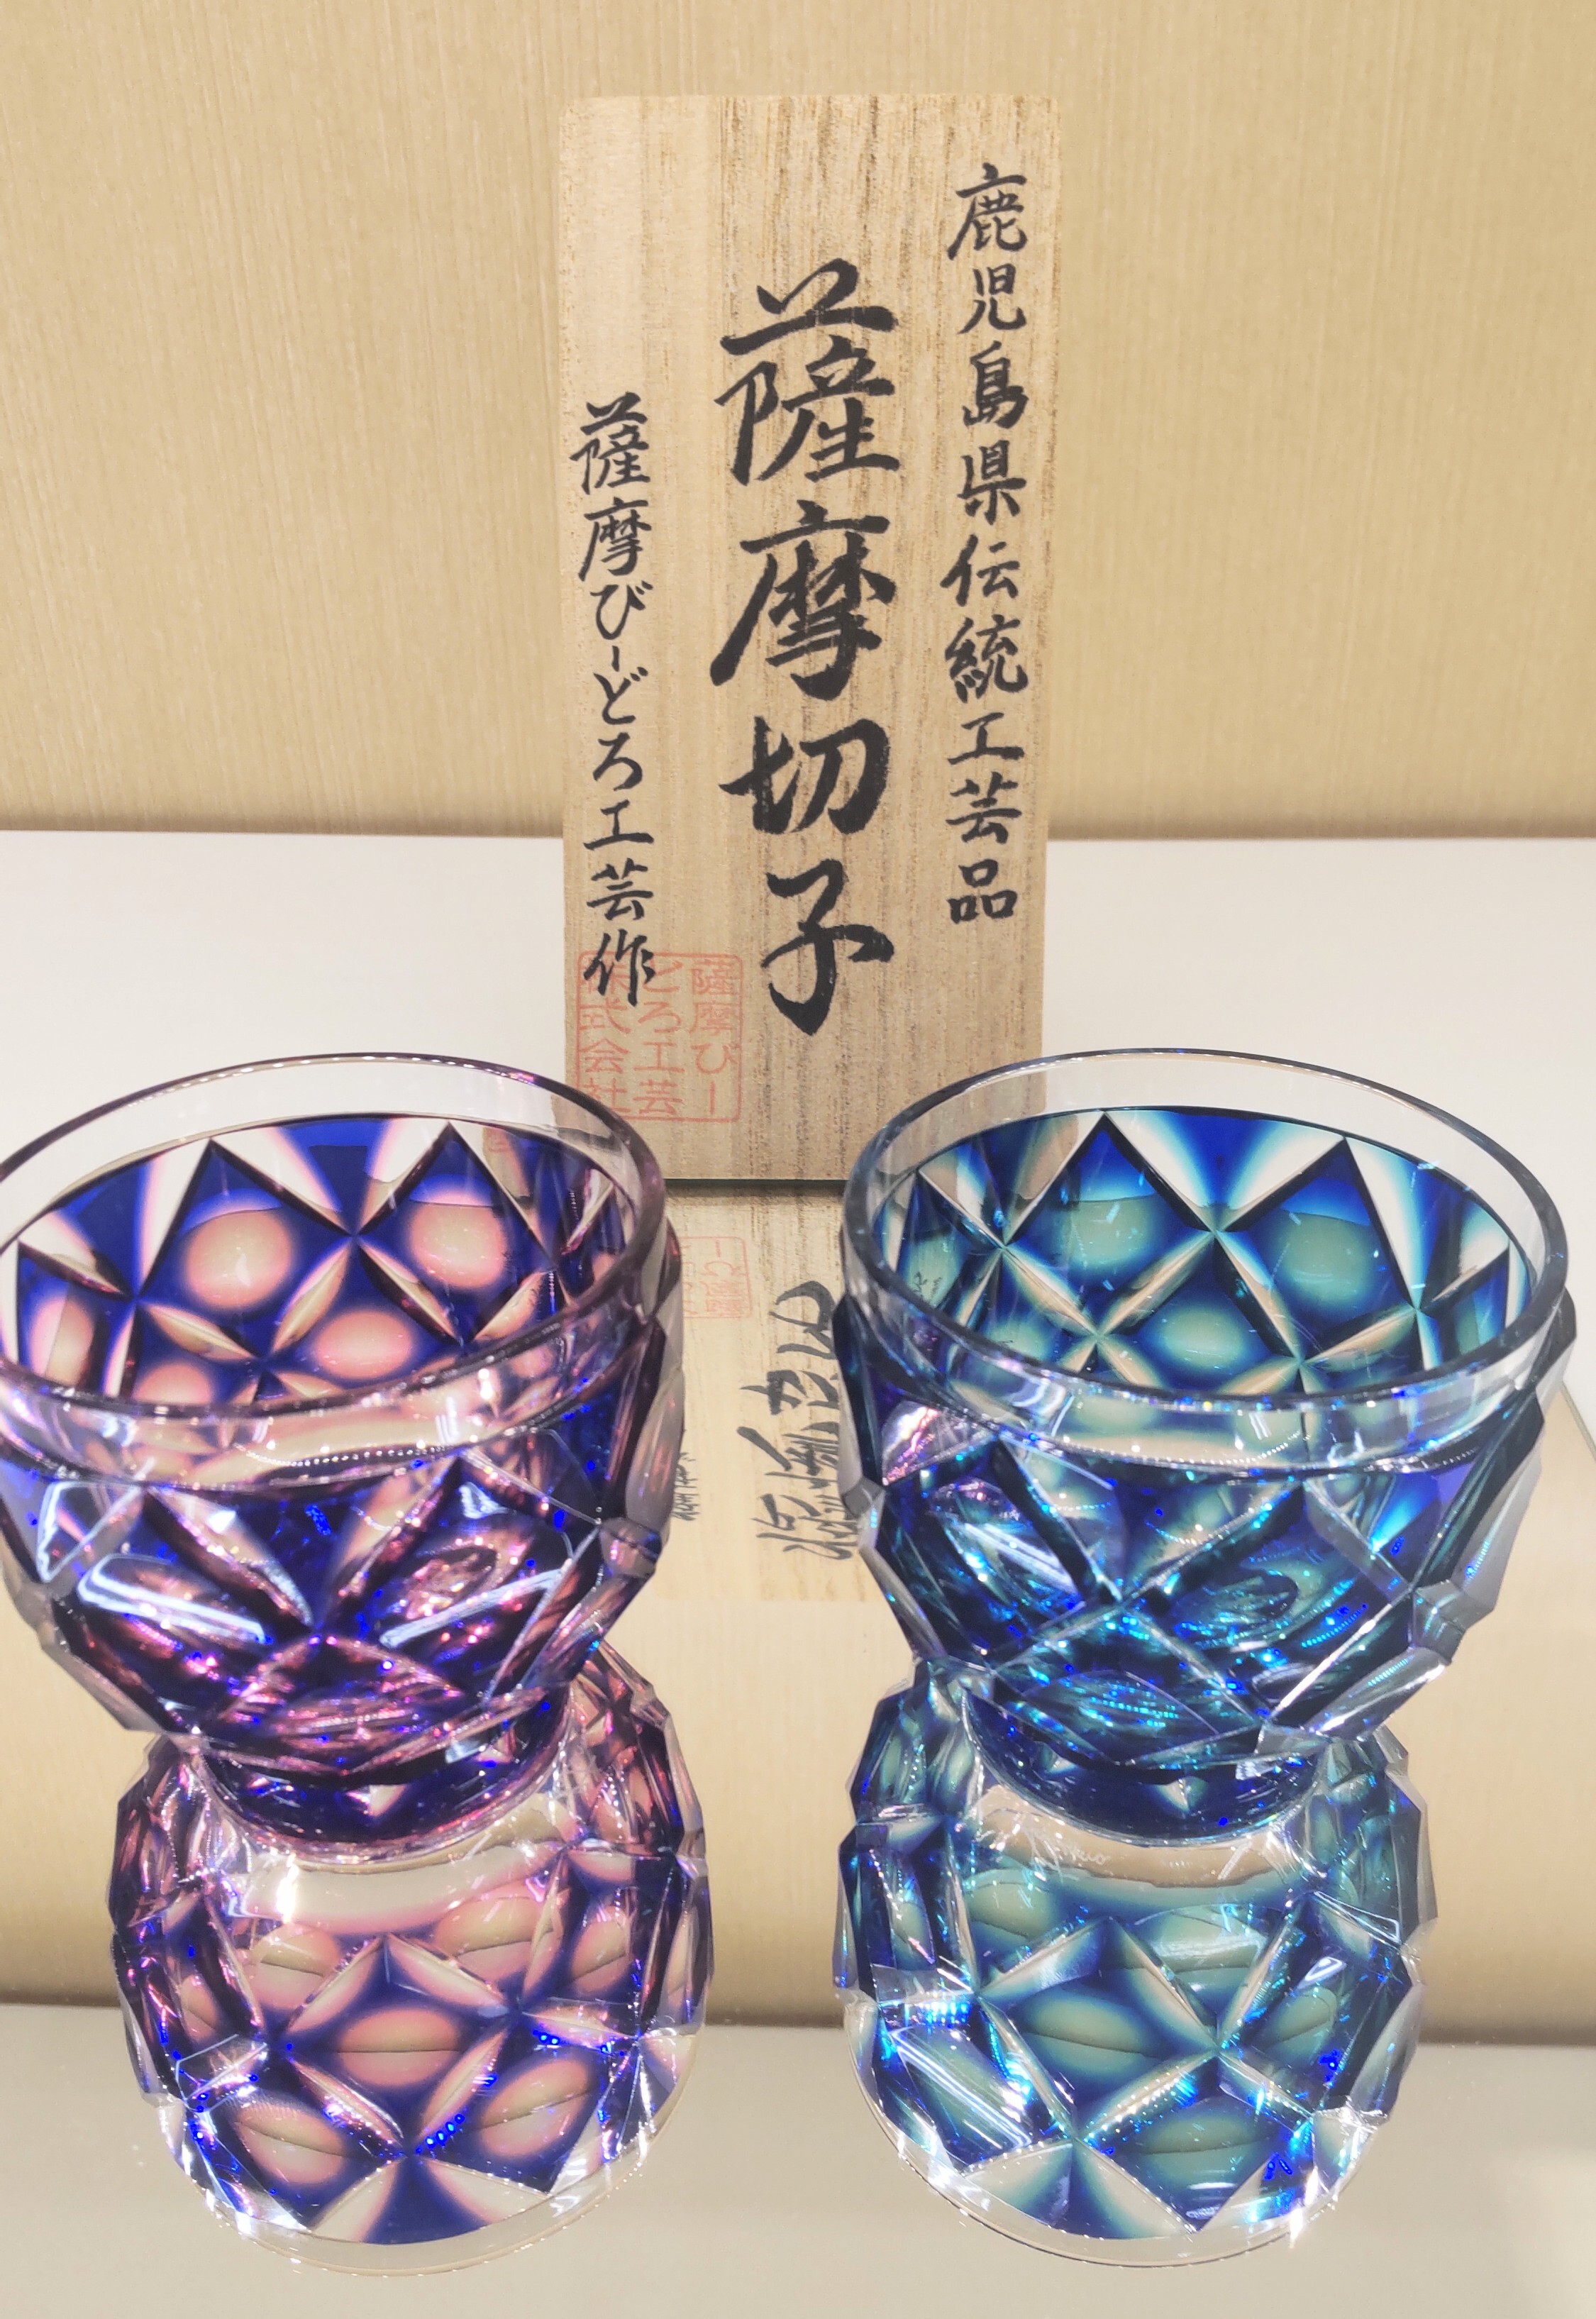 魅力的なグラス、「薩摩切子」